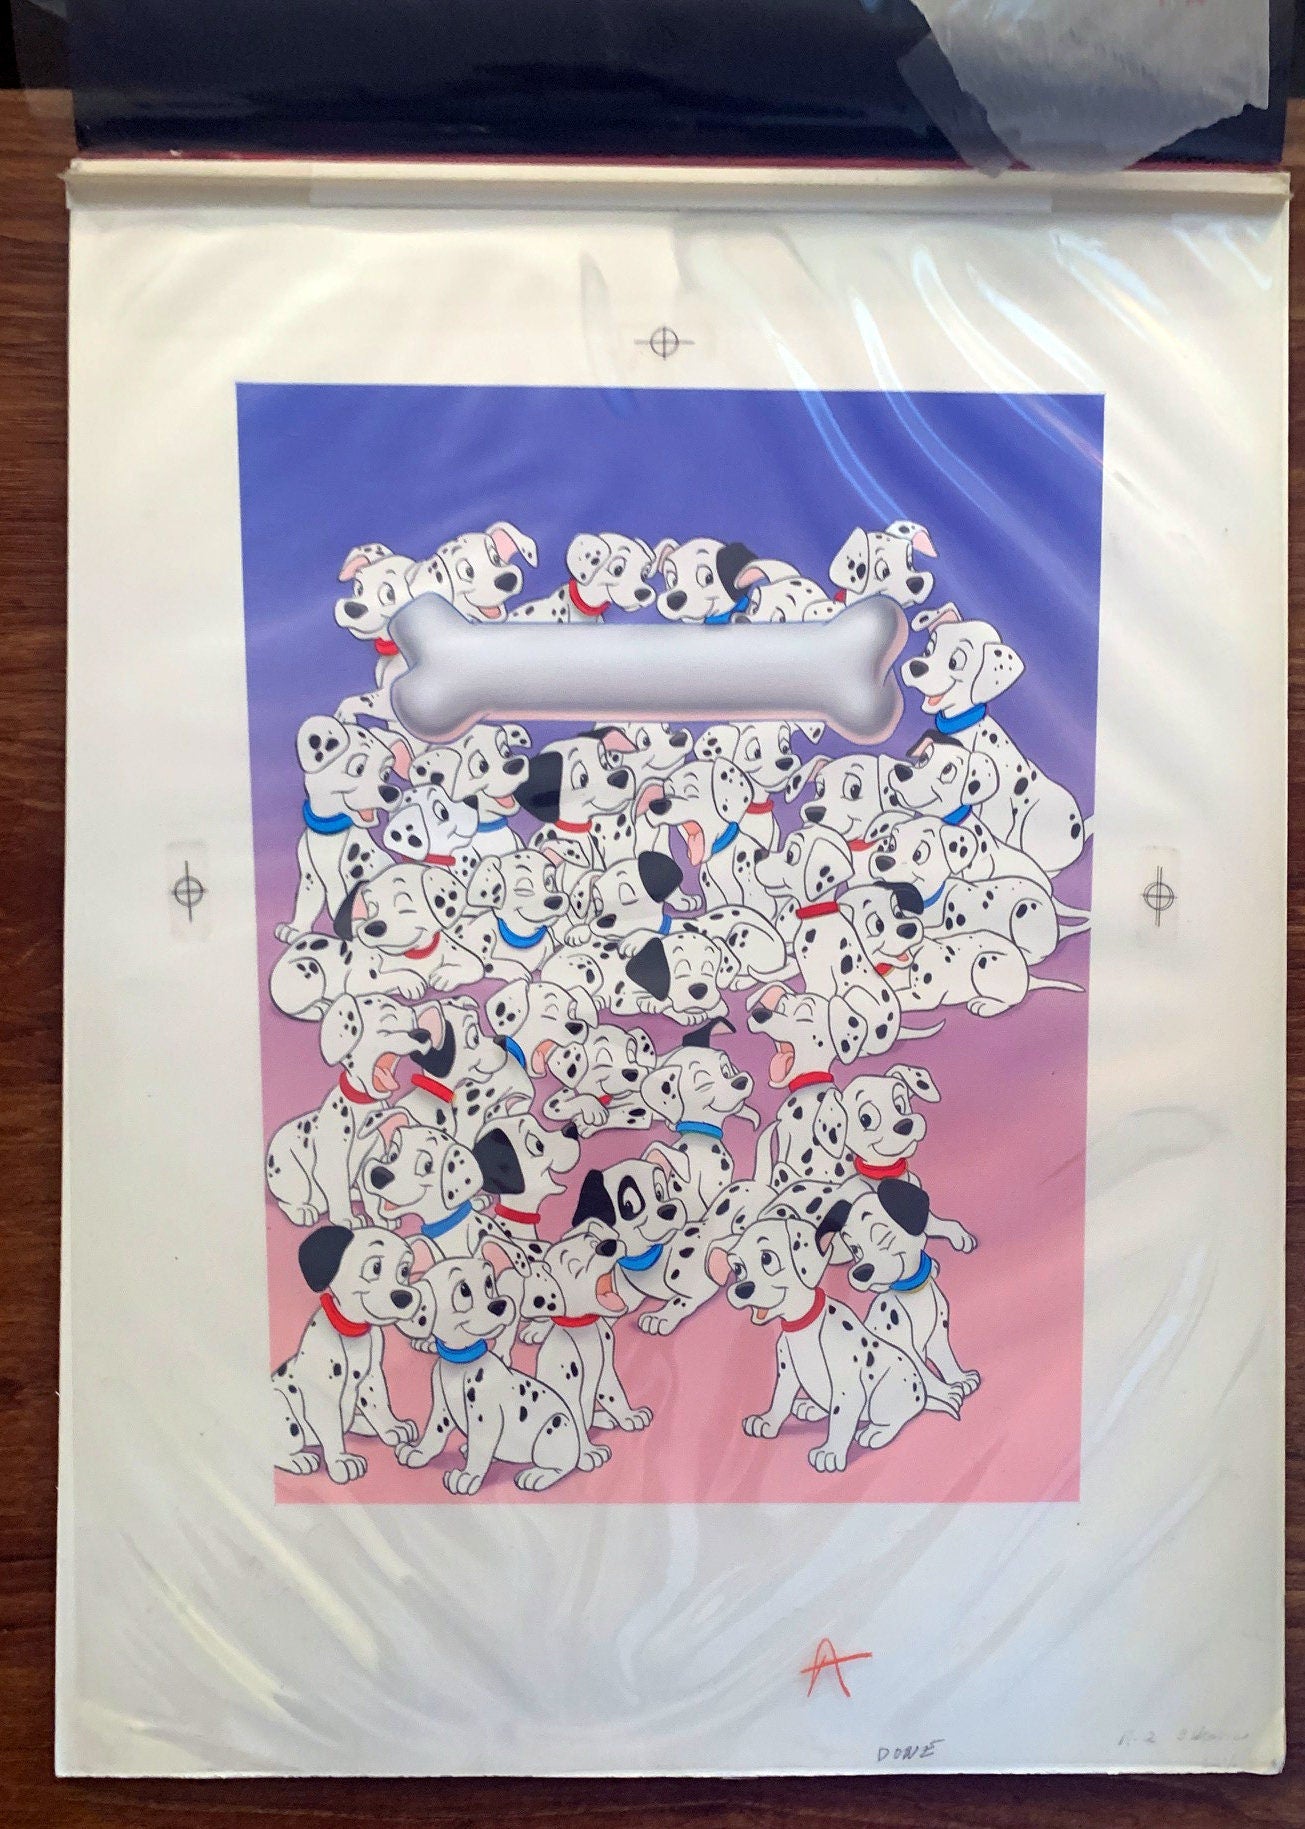 101 Dalmatians Walt Disney McDonalds Happy Meal Box Design Art 1991 HUGE